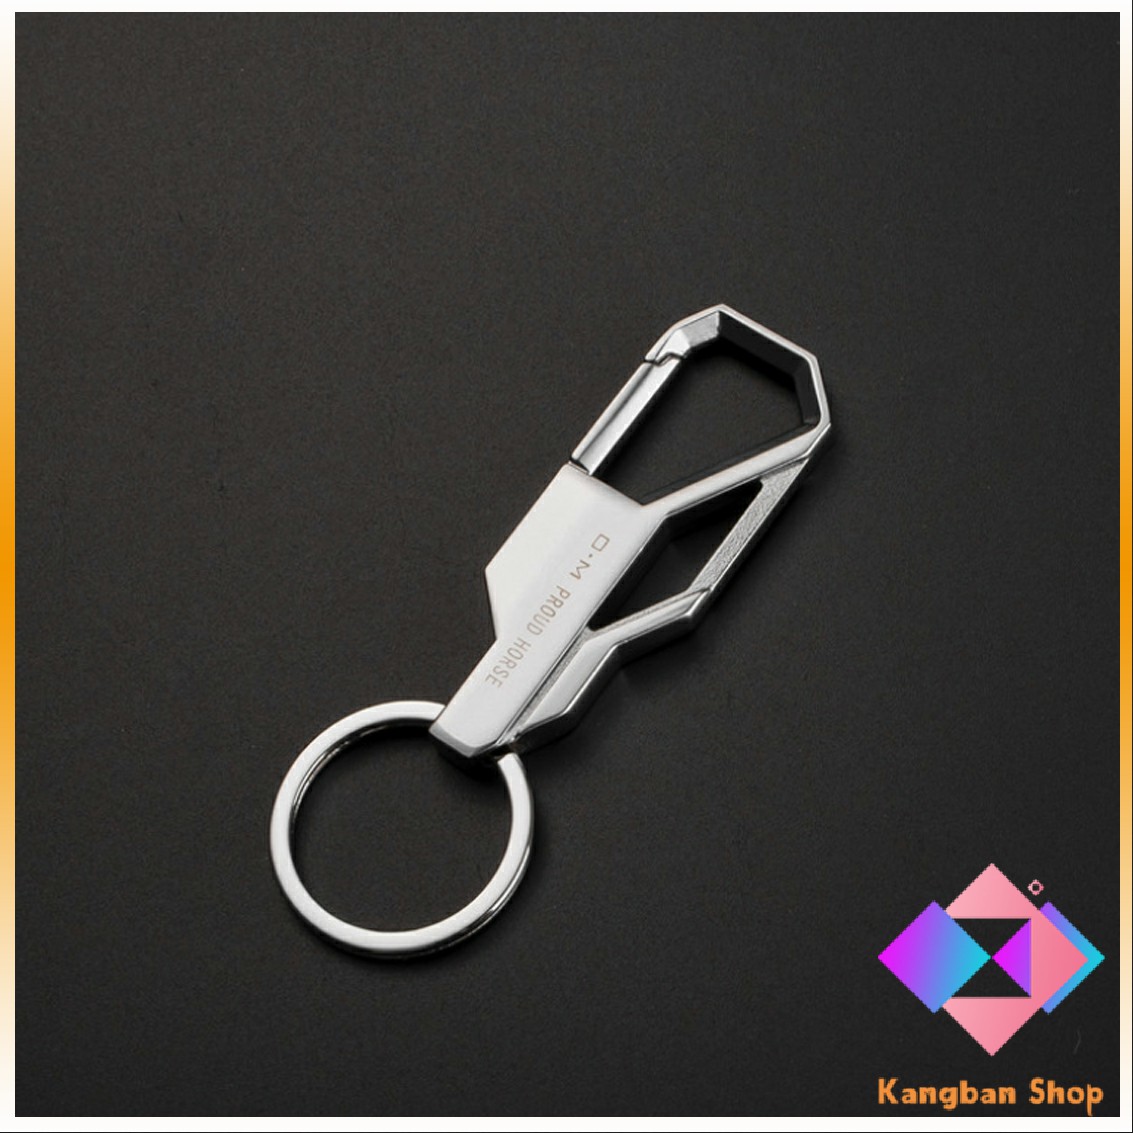 คำอธิบายเพิ่มเติมเกี่ยวกับ KANGBAN ที่ล๊อคพวงกุญแจโลหะ สำหรับห้อยงกุญแจ พวงกุญแจราคาถูก พวงกุญแจรถ 1 ชิ้น Keychain